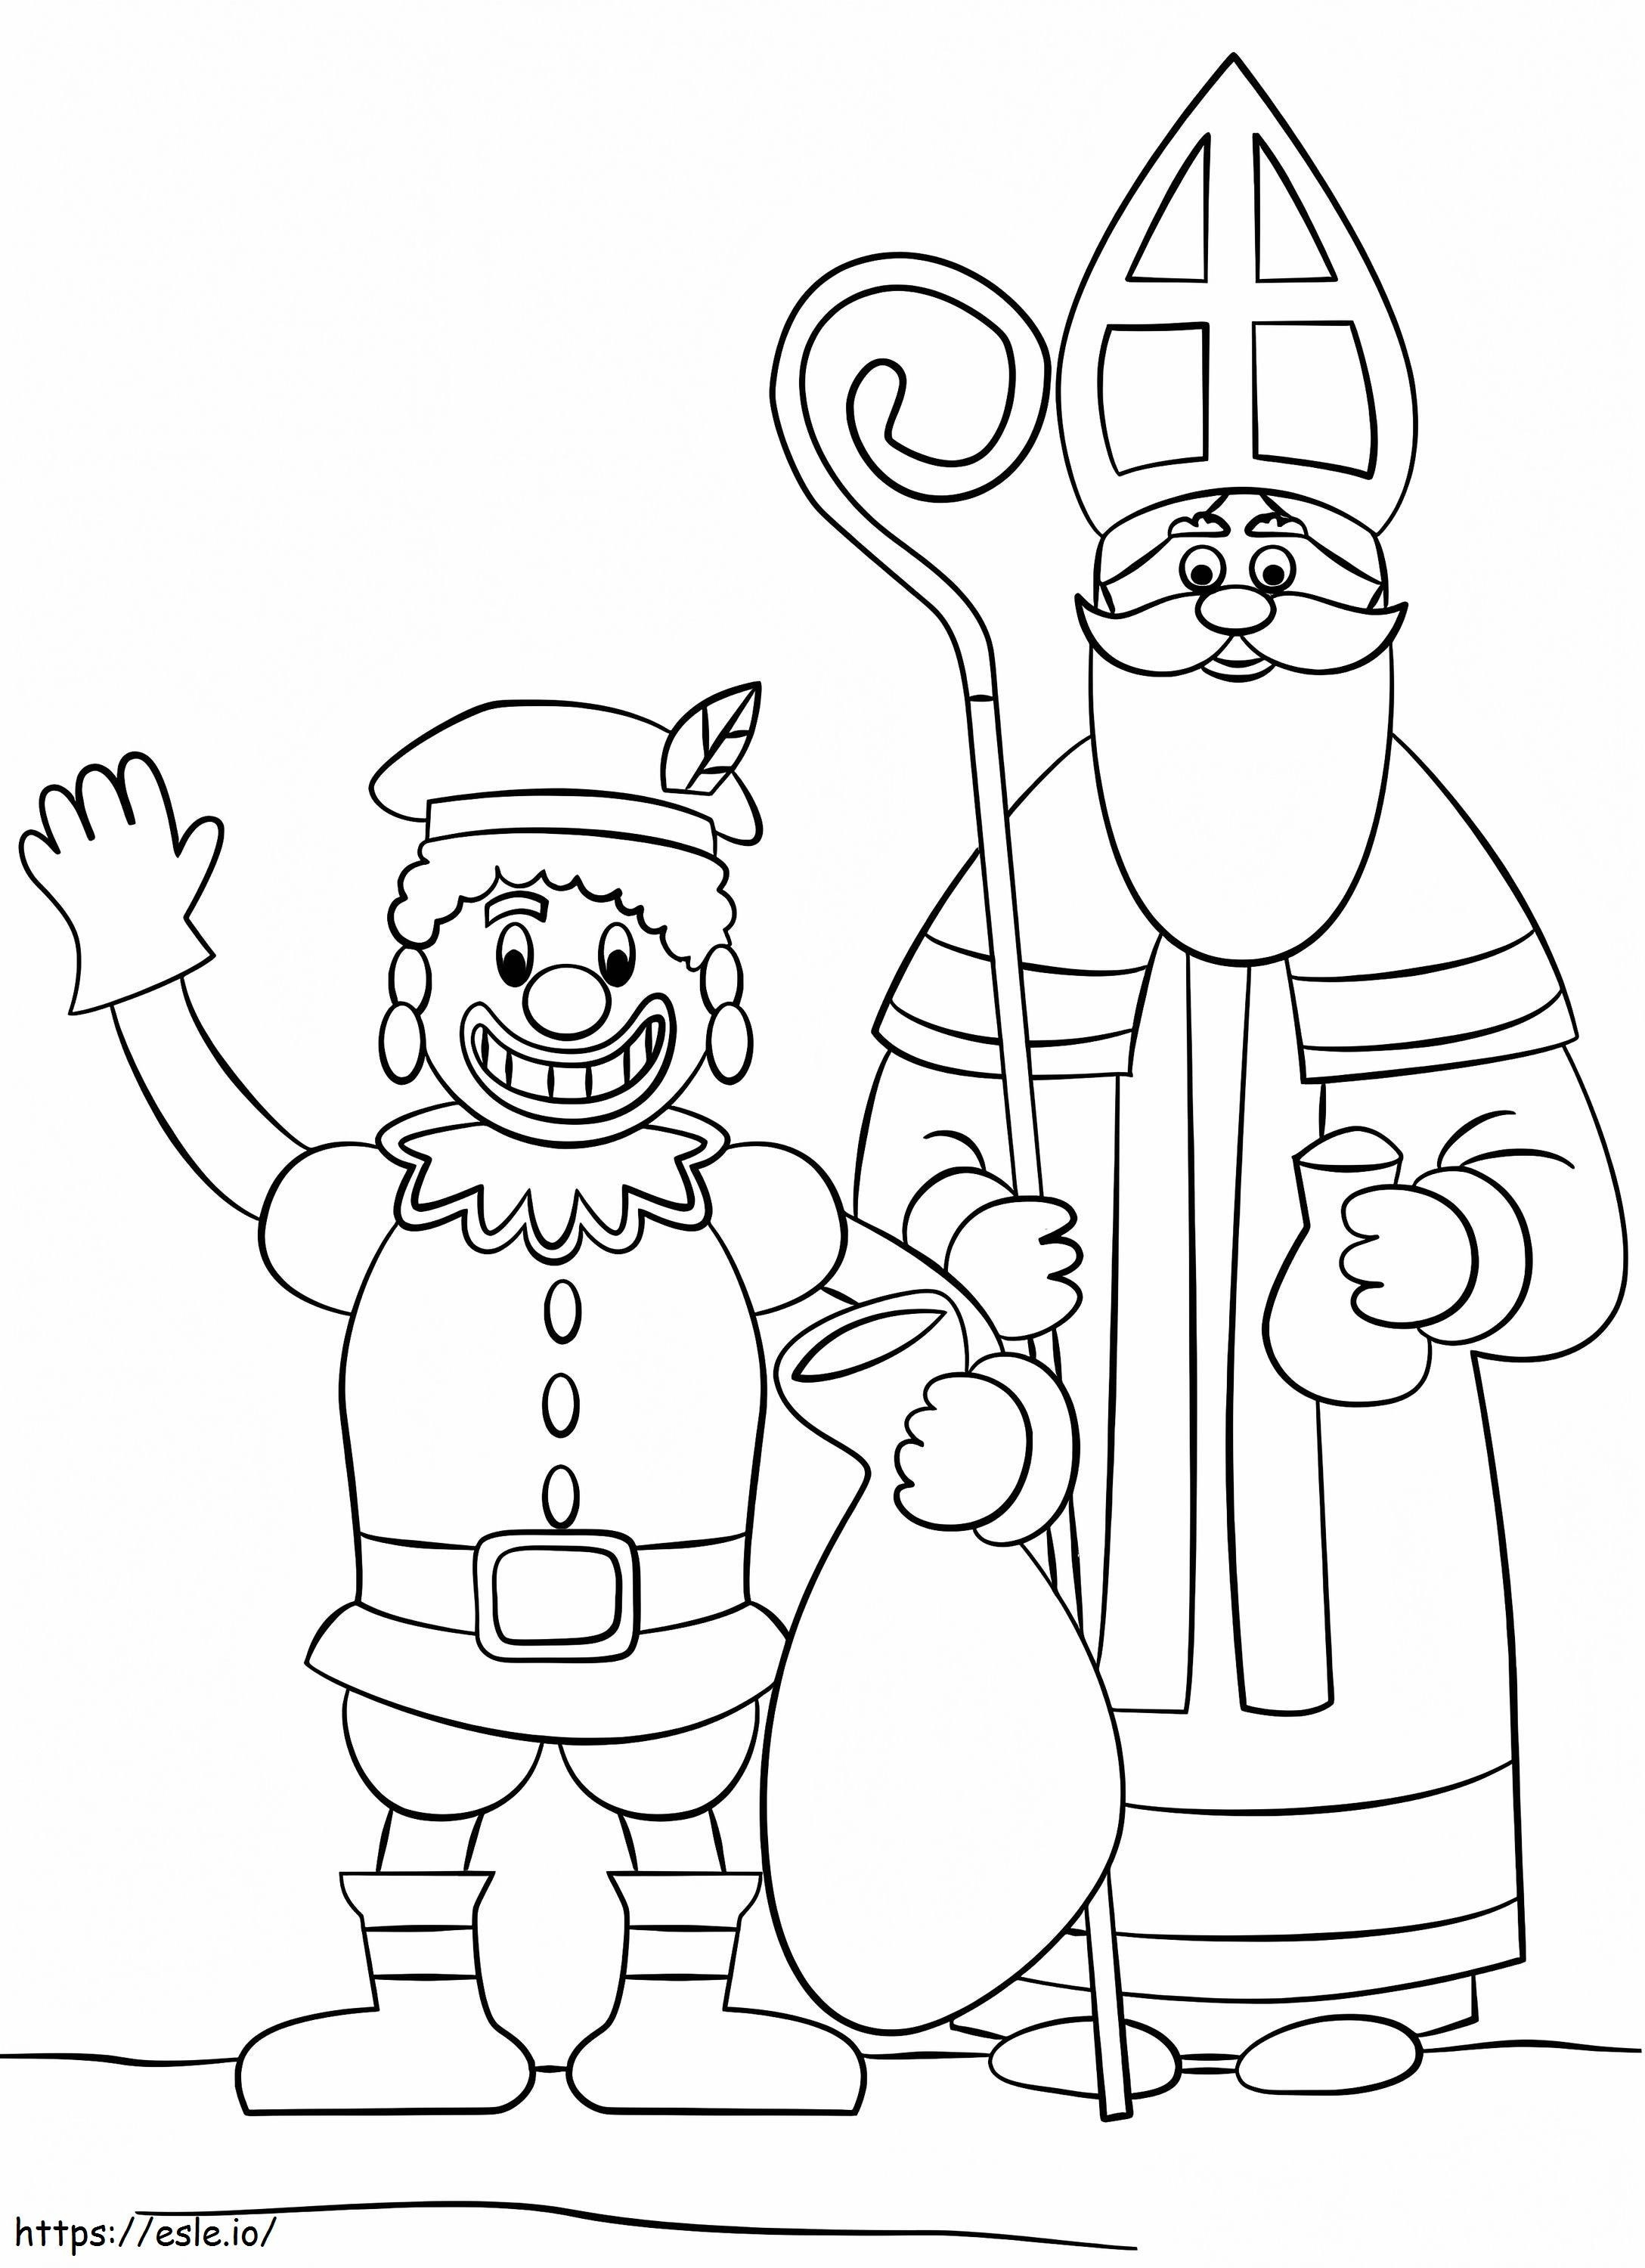 Zwarte Piet e San Nicola da colorare